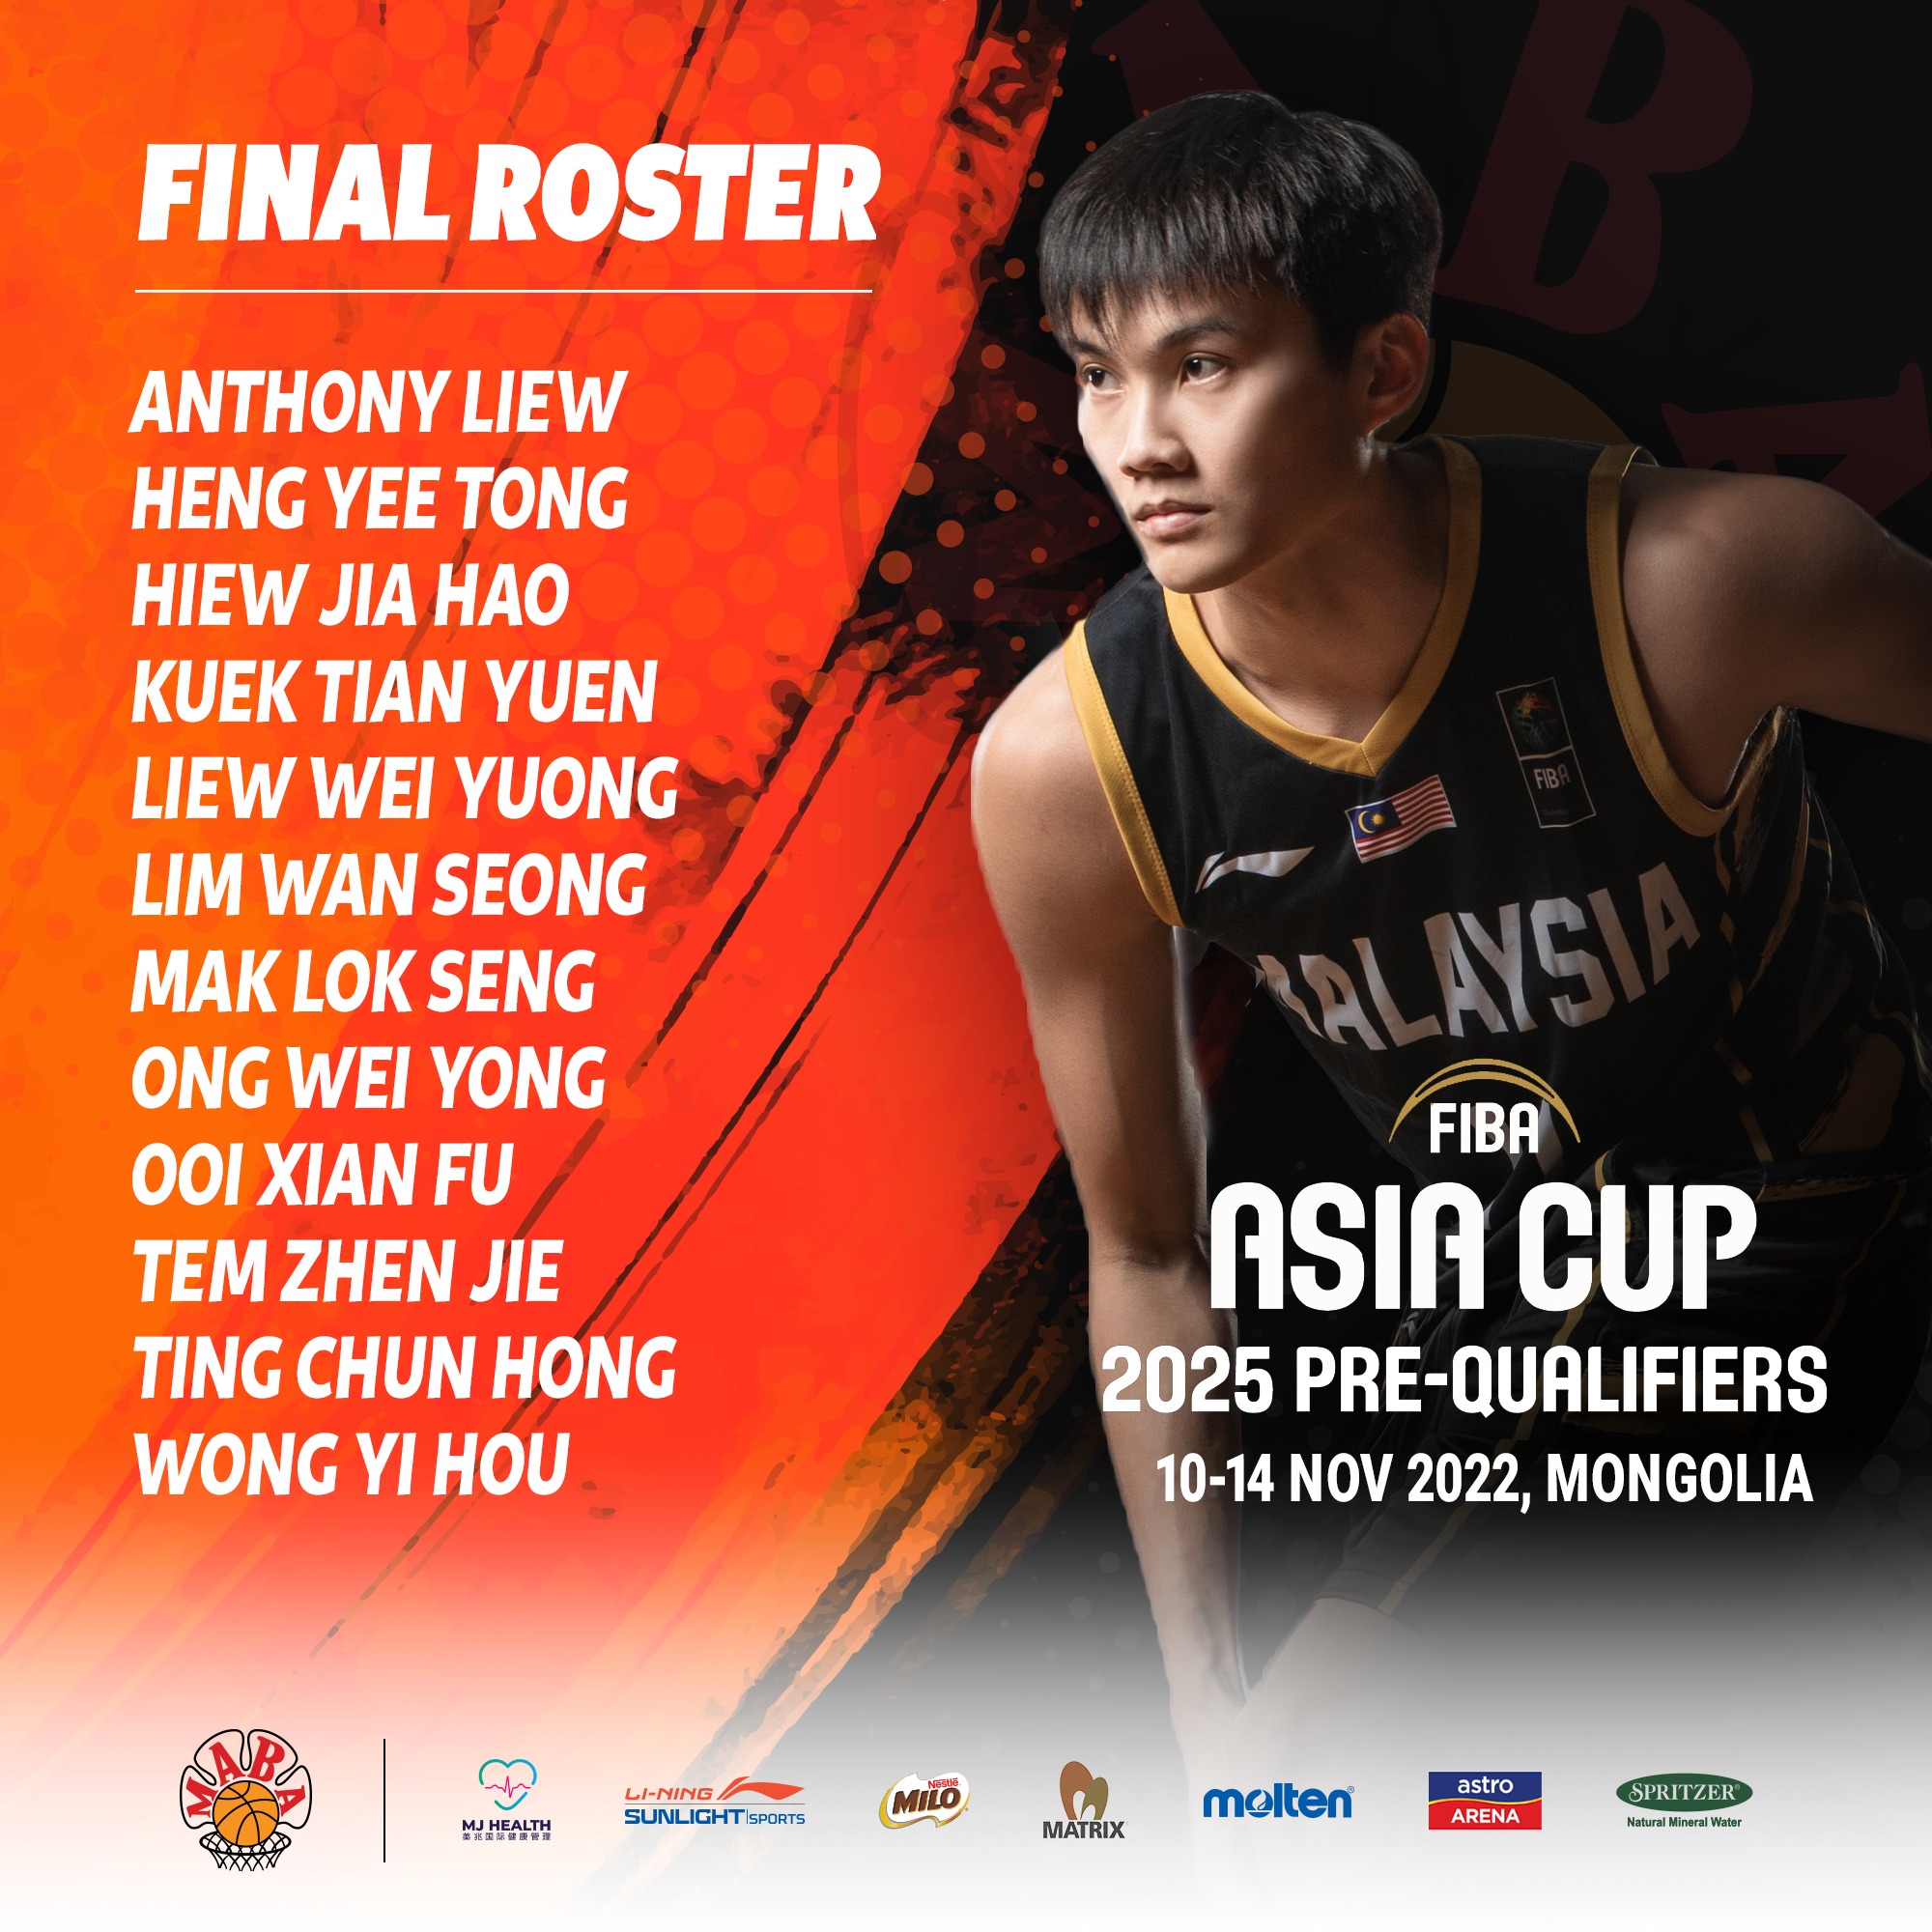 Malaysia và Thái Lan lộ đội hình, tuyển bóng rổ Việt Nam gặp khó ở vòng sơ loại FIBA Asia Cup 2025 - Ảnh 1.